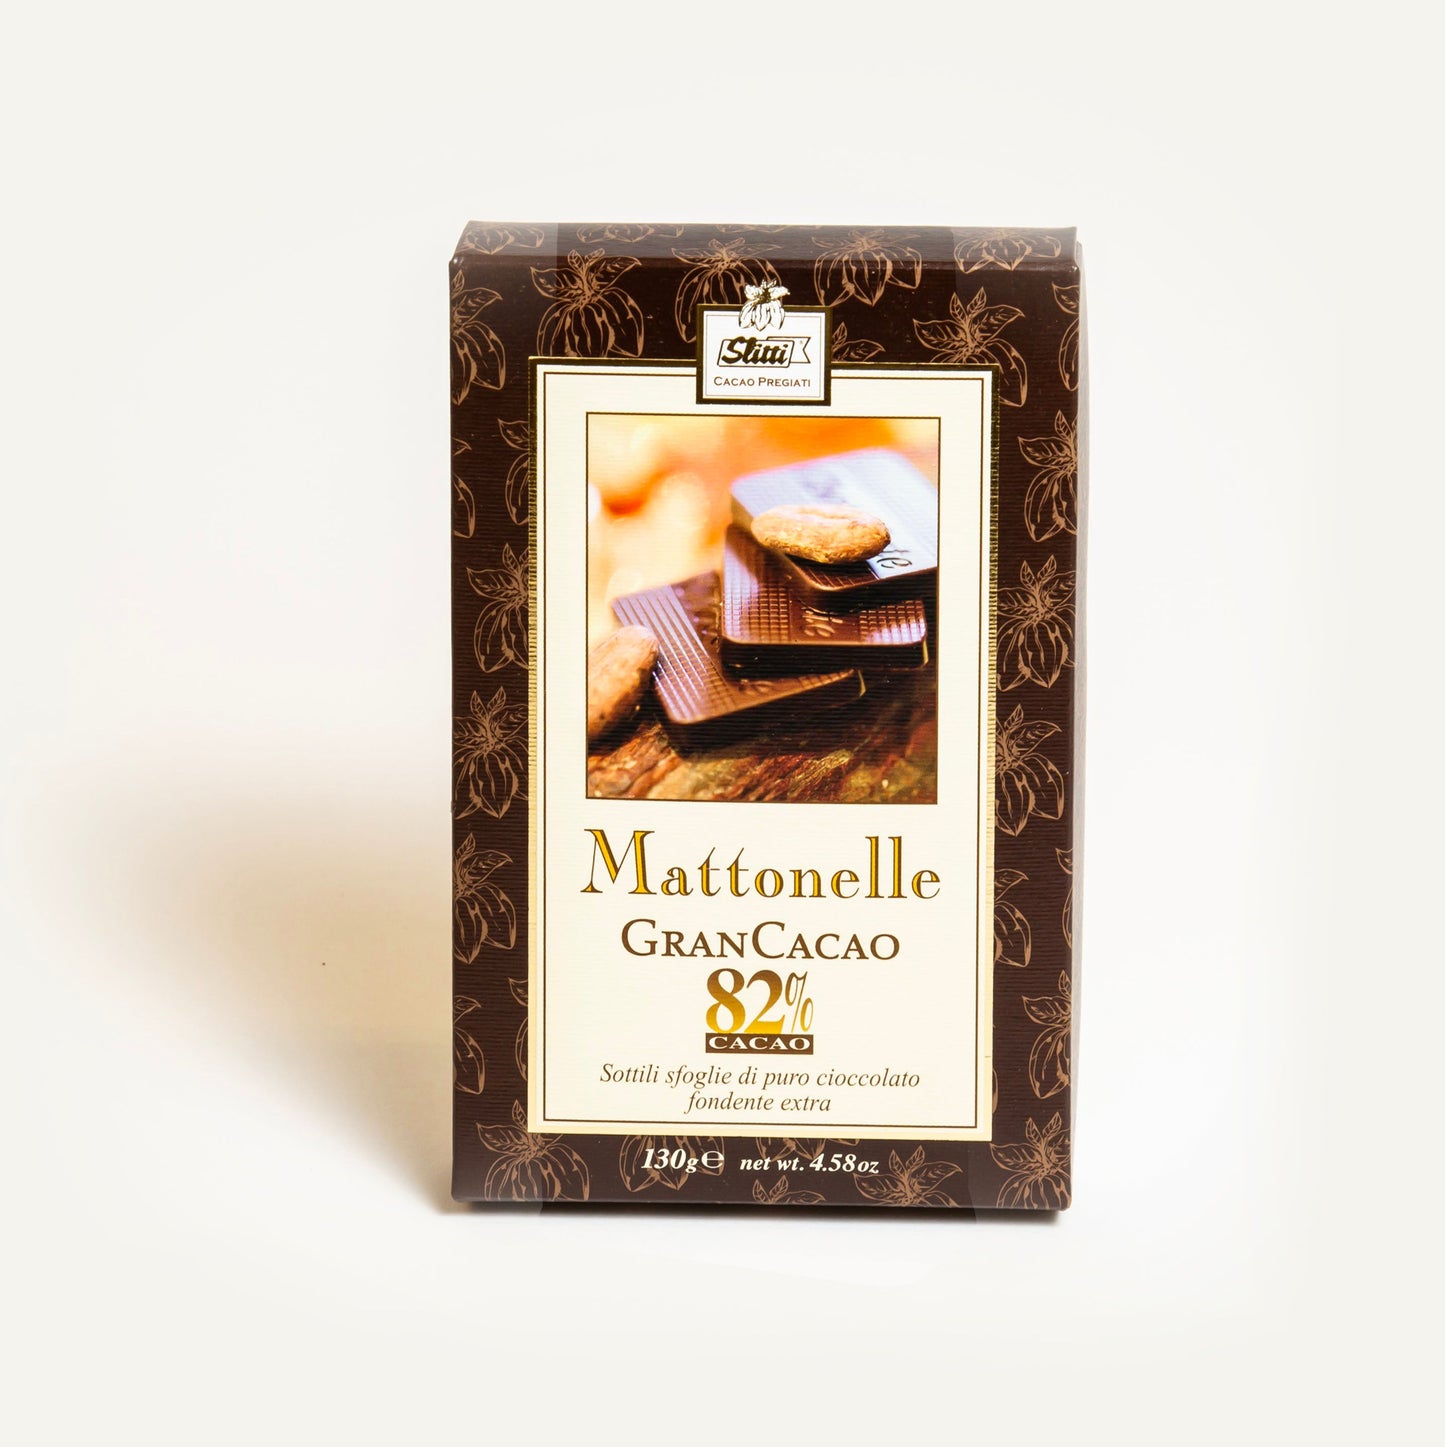 Dark Chocolate Mattonelle "Gran Cacao" 82%